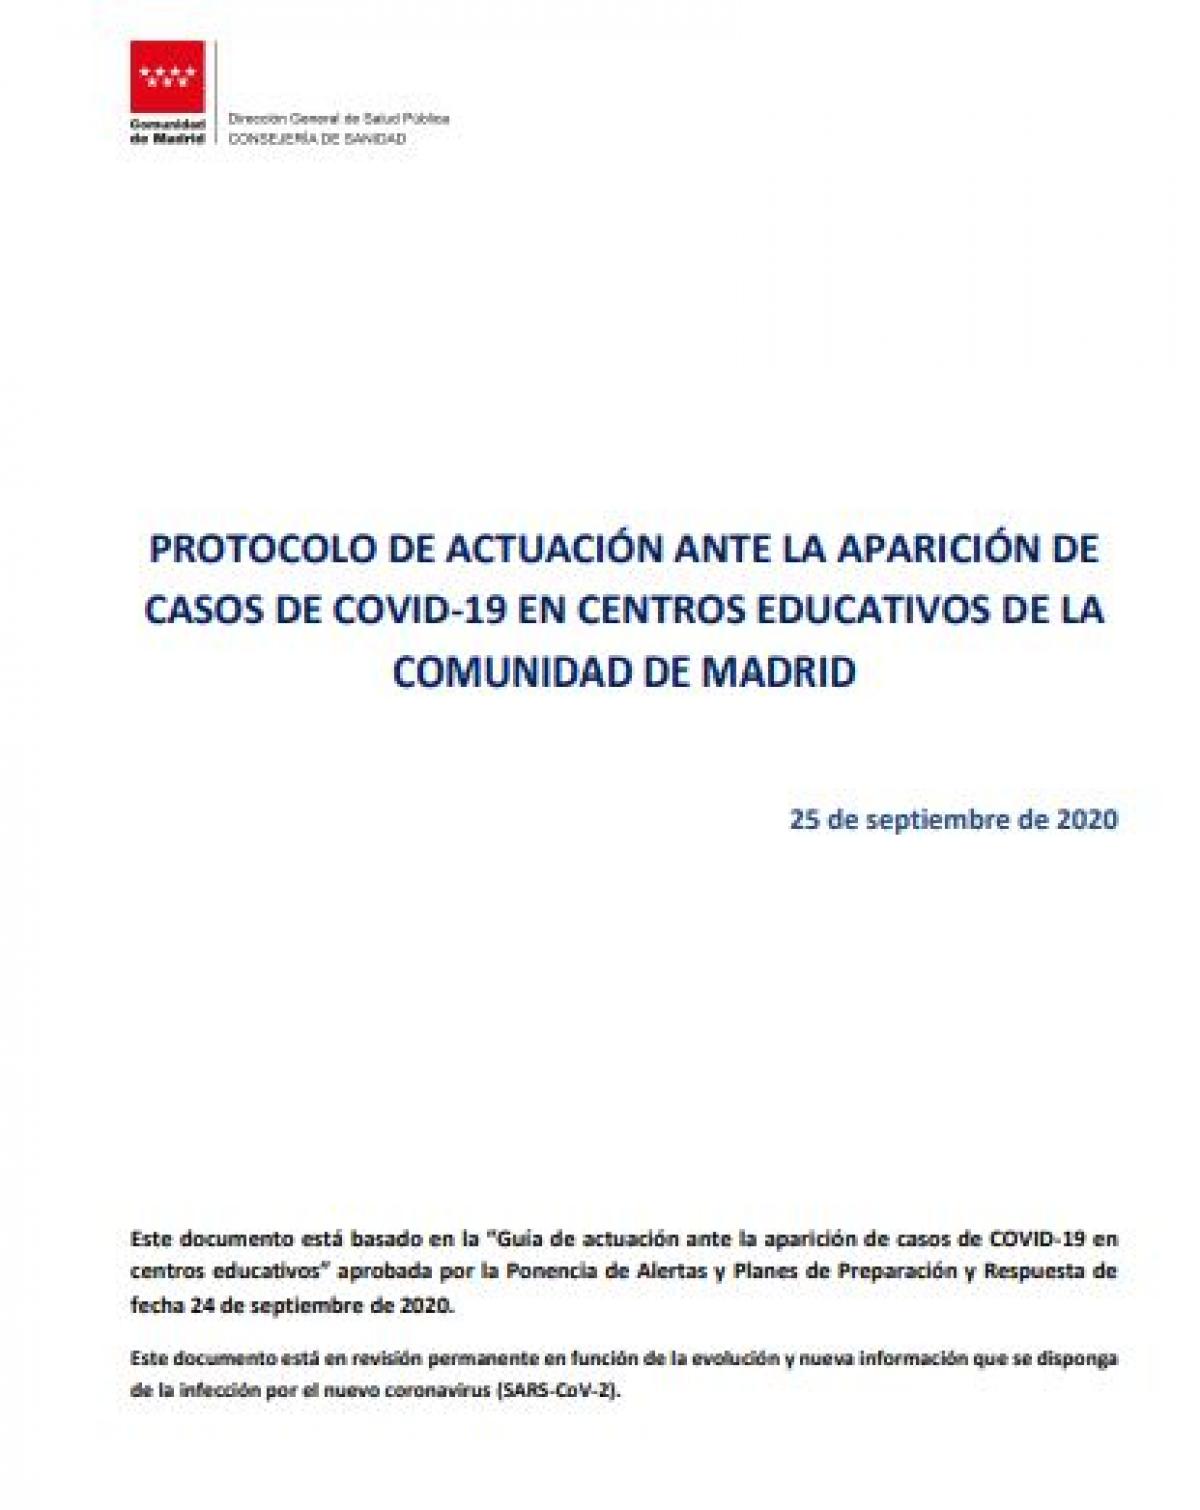 Protocolo de actuacin ante la aparicin de casos de covid-19 en centros educativos de la Comunidad de Madrid